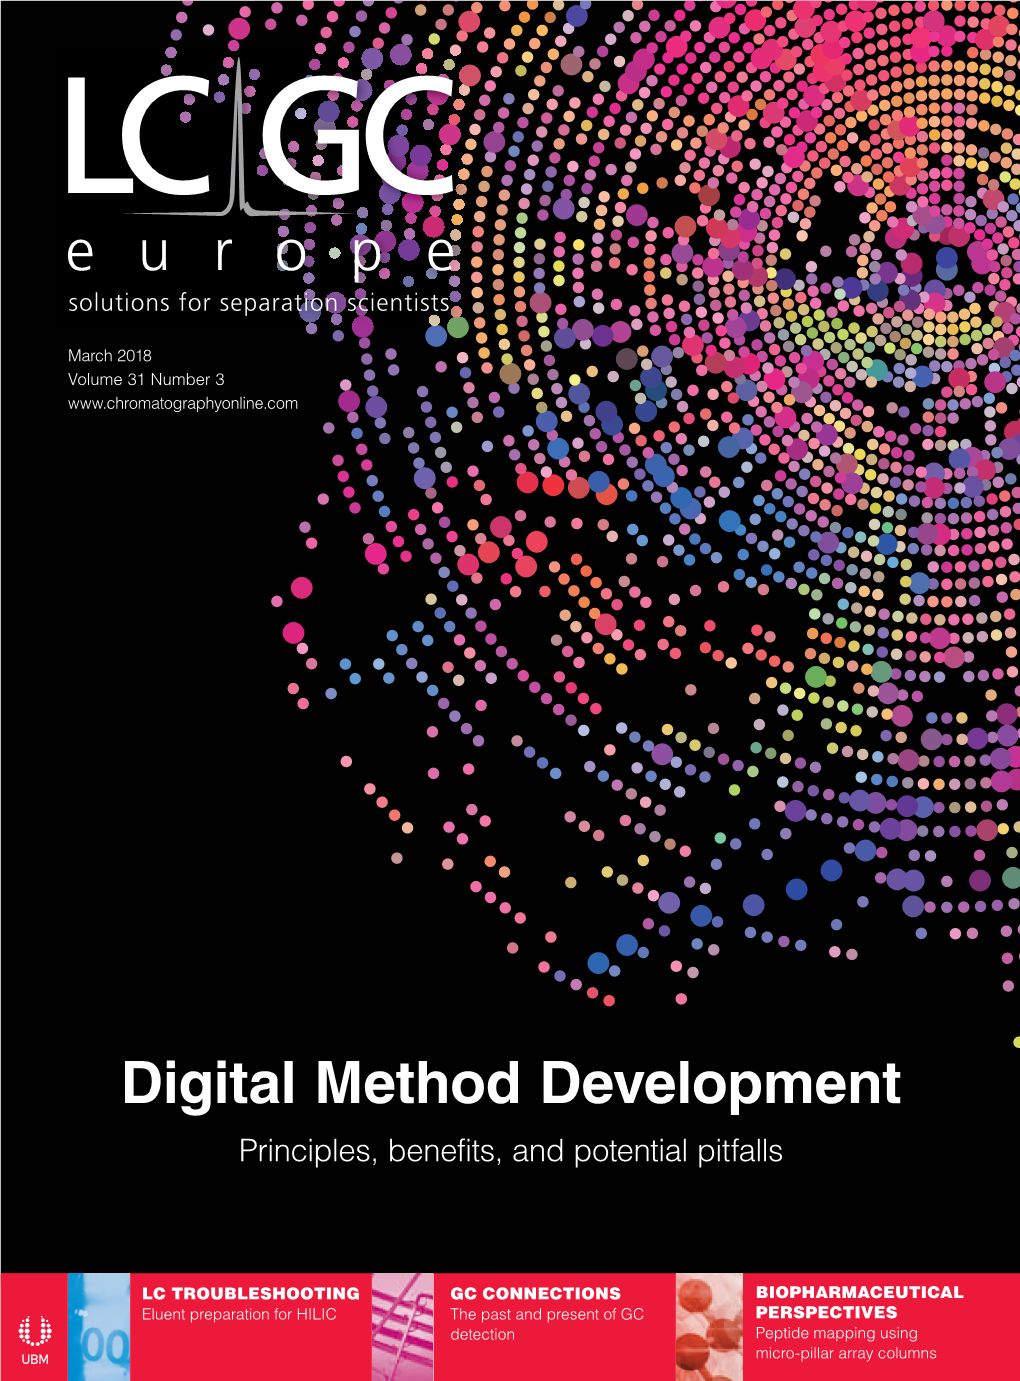 Digital Method Development Principles, Benefits, and Potential Pitfalls